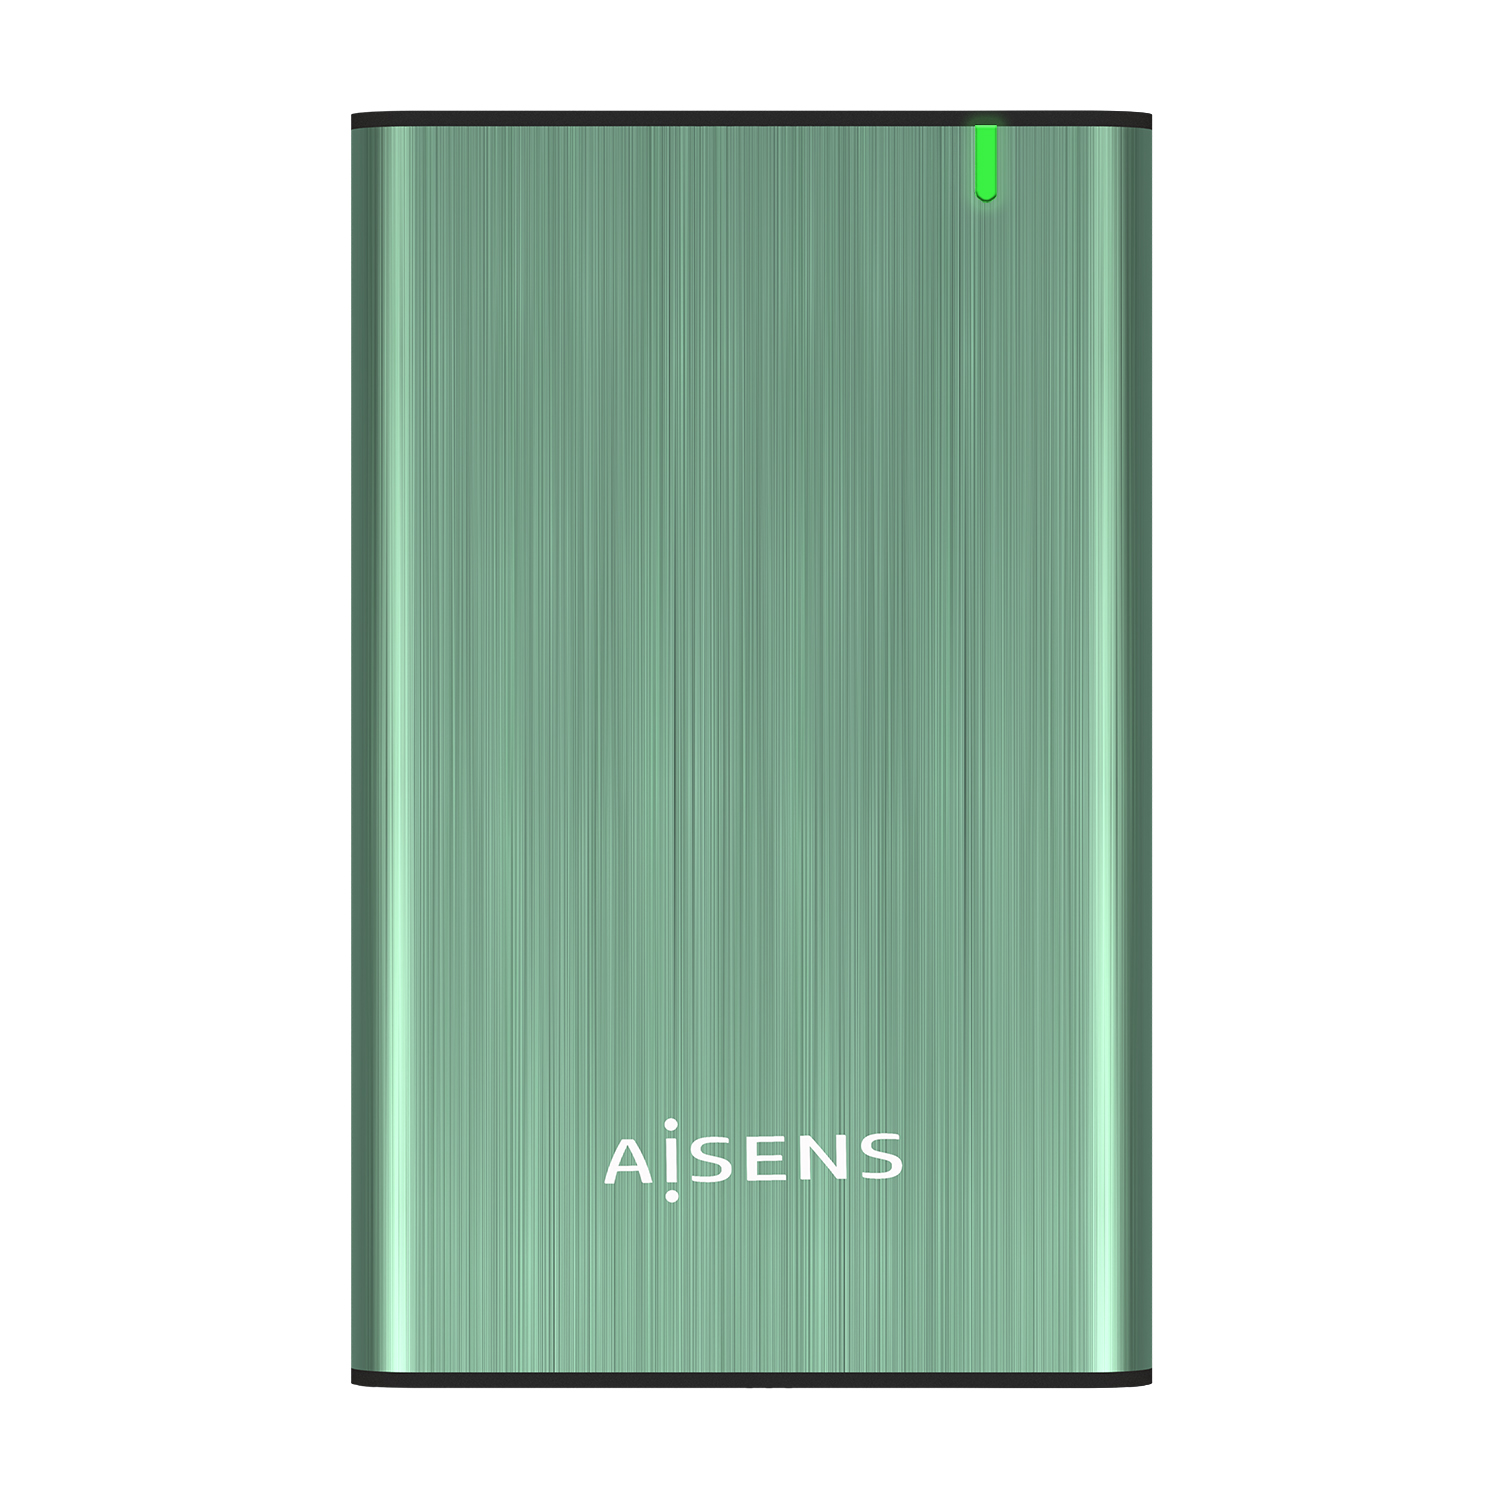 Boitier Externe Aisens 2.5 ? pour disques durs SATA I, II et III 9,5 mm vers USB 3.0/USB 3.1 GEN1 - Couleur vert printemps